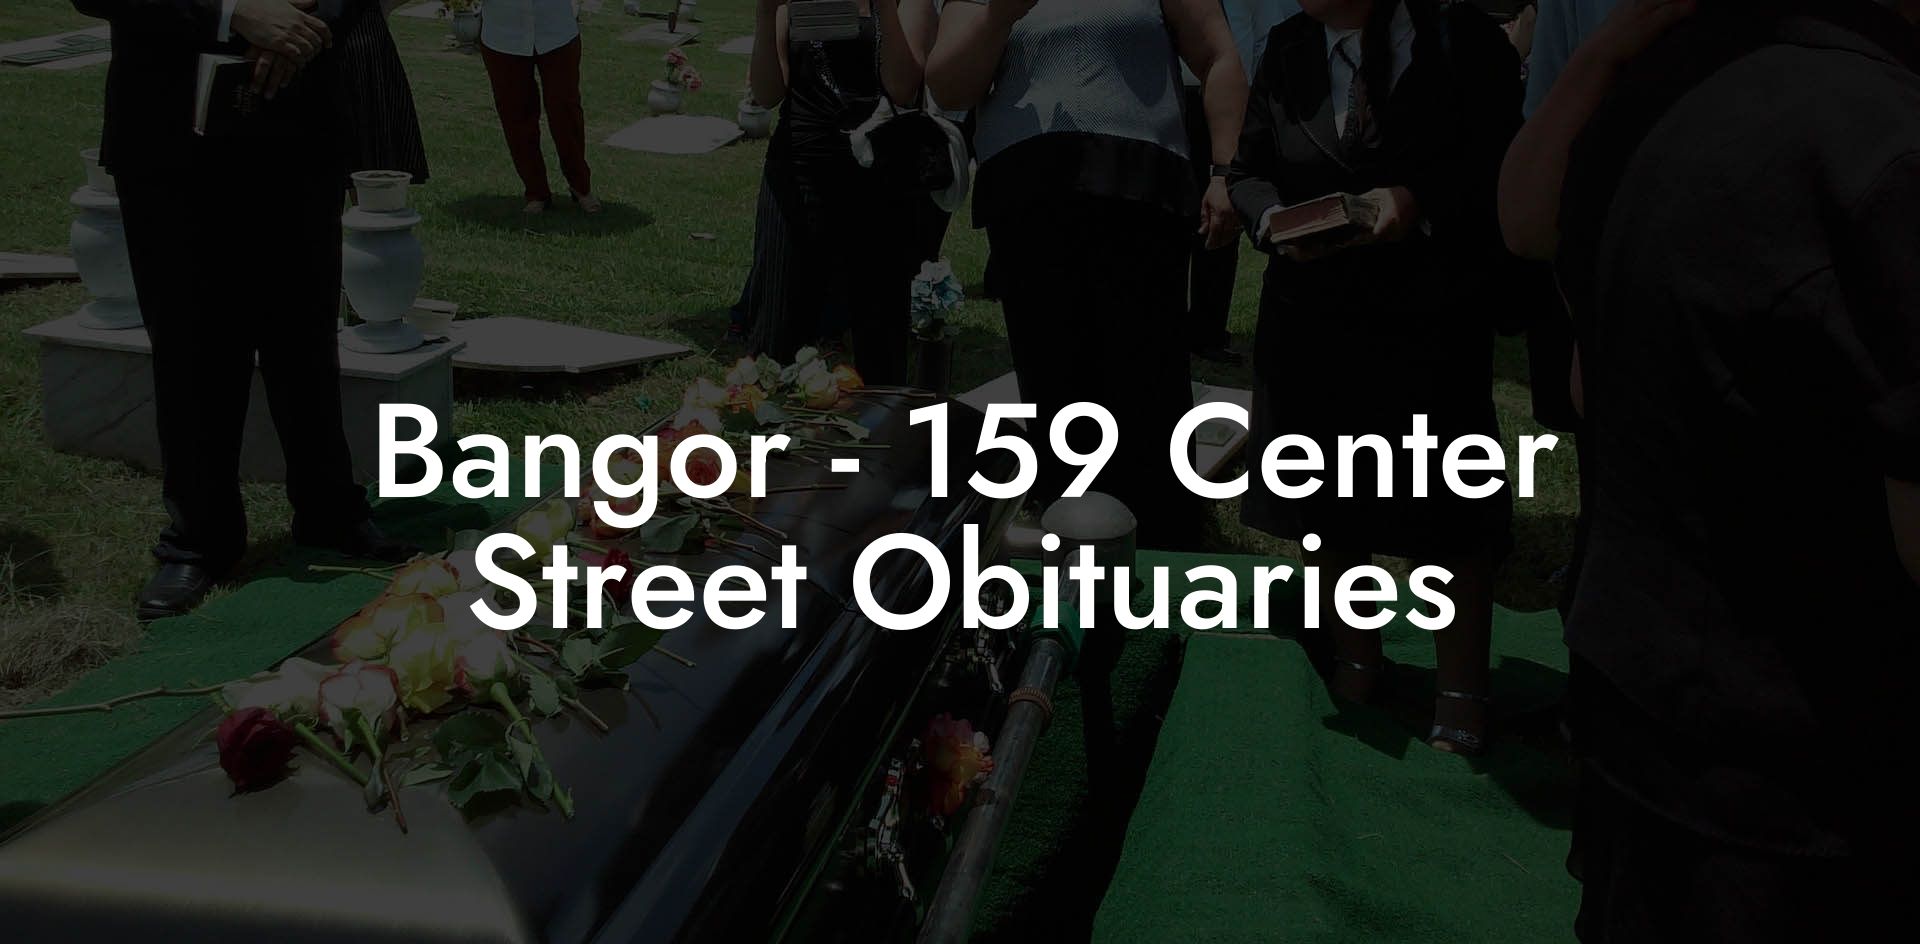 Bangor - 159 Center Street Obituaries